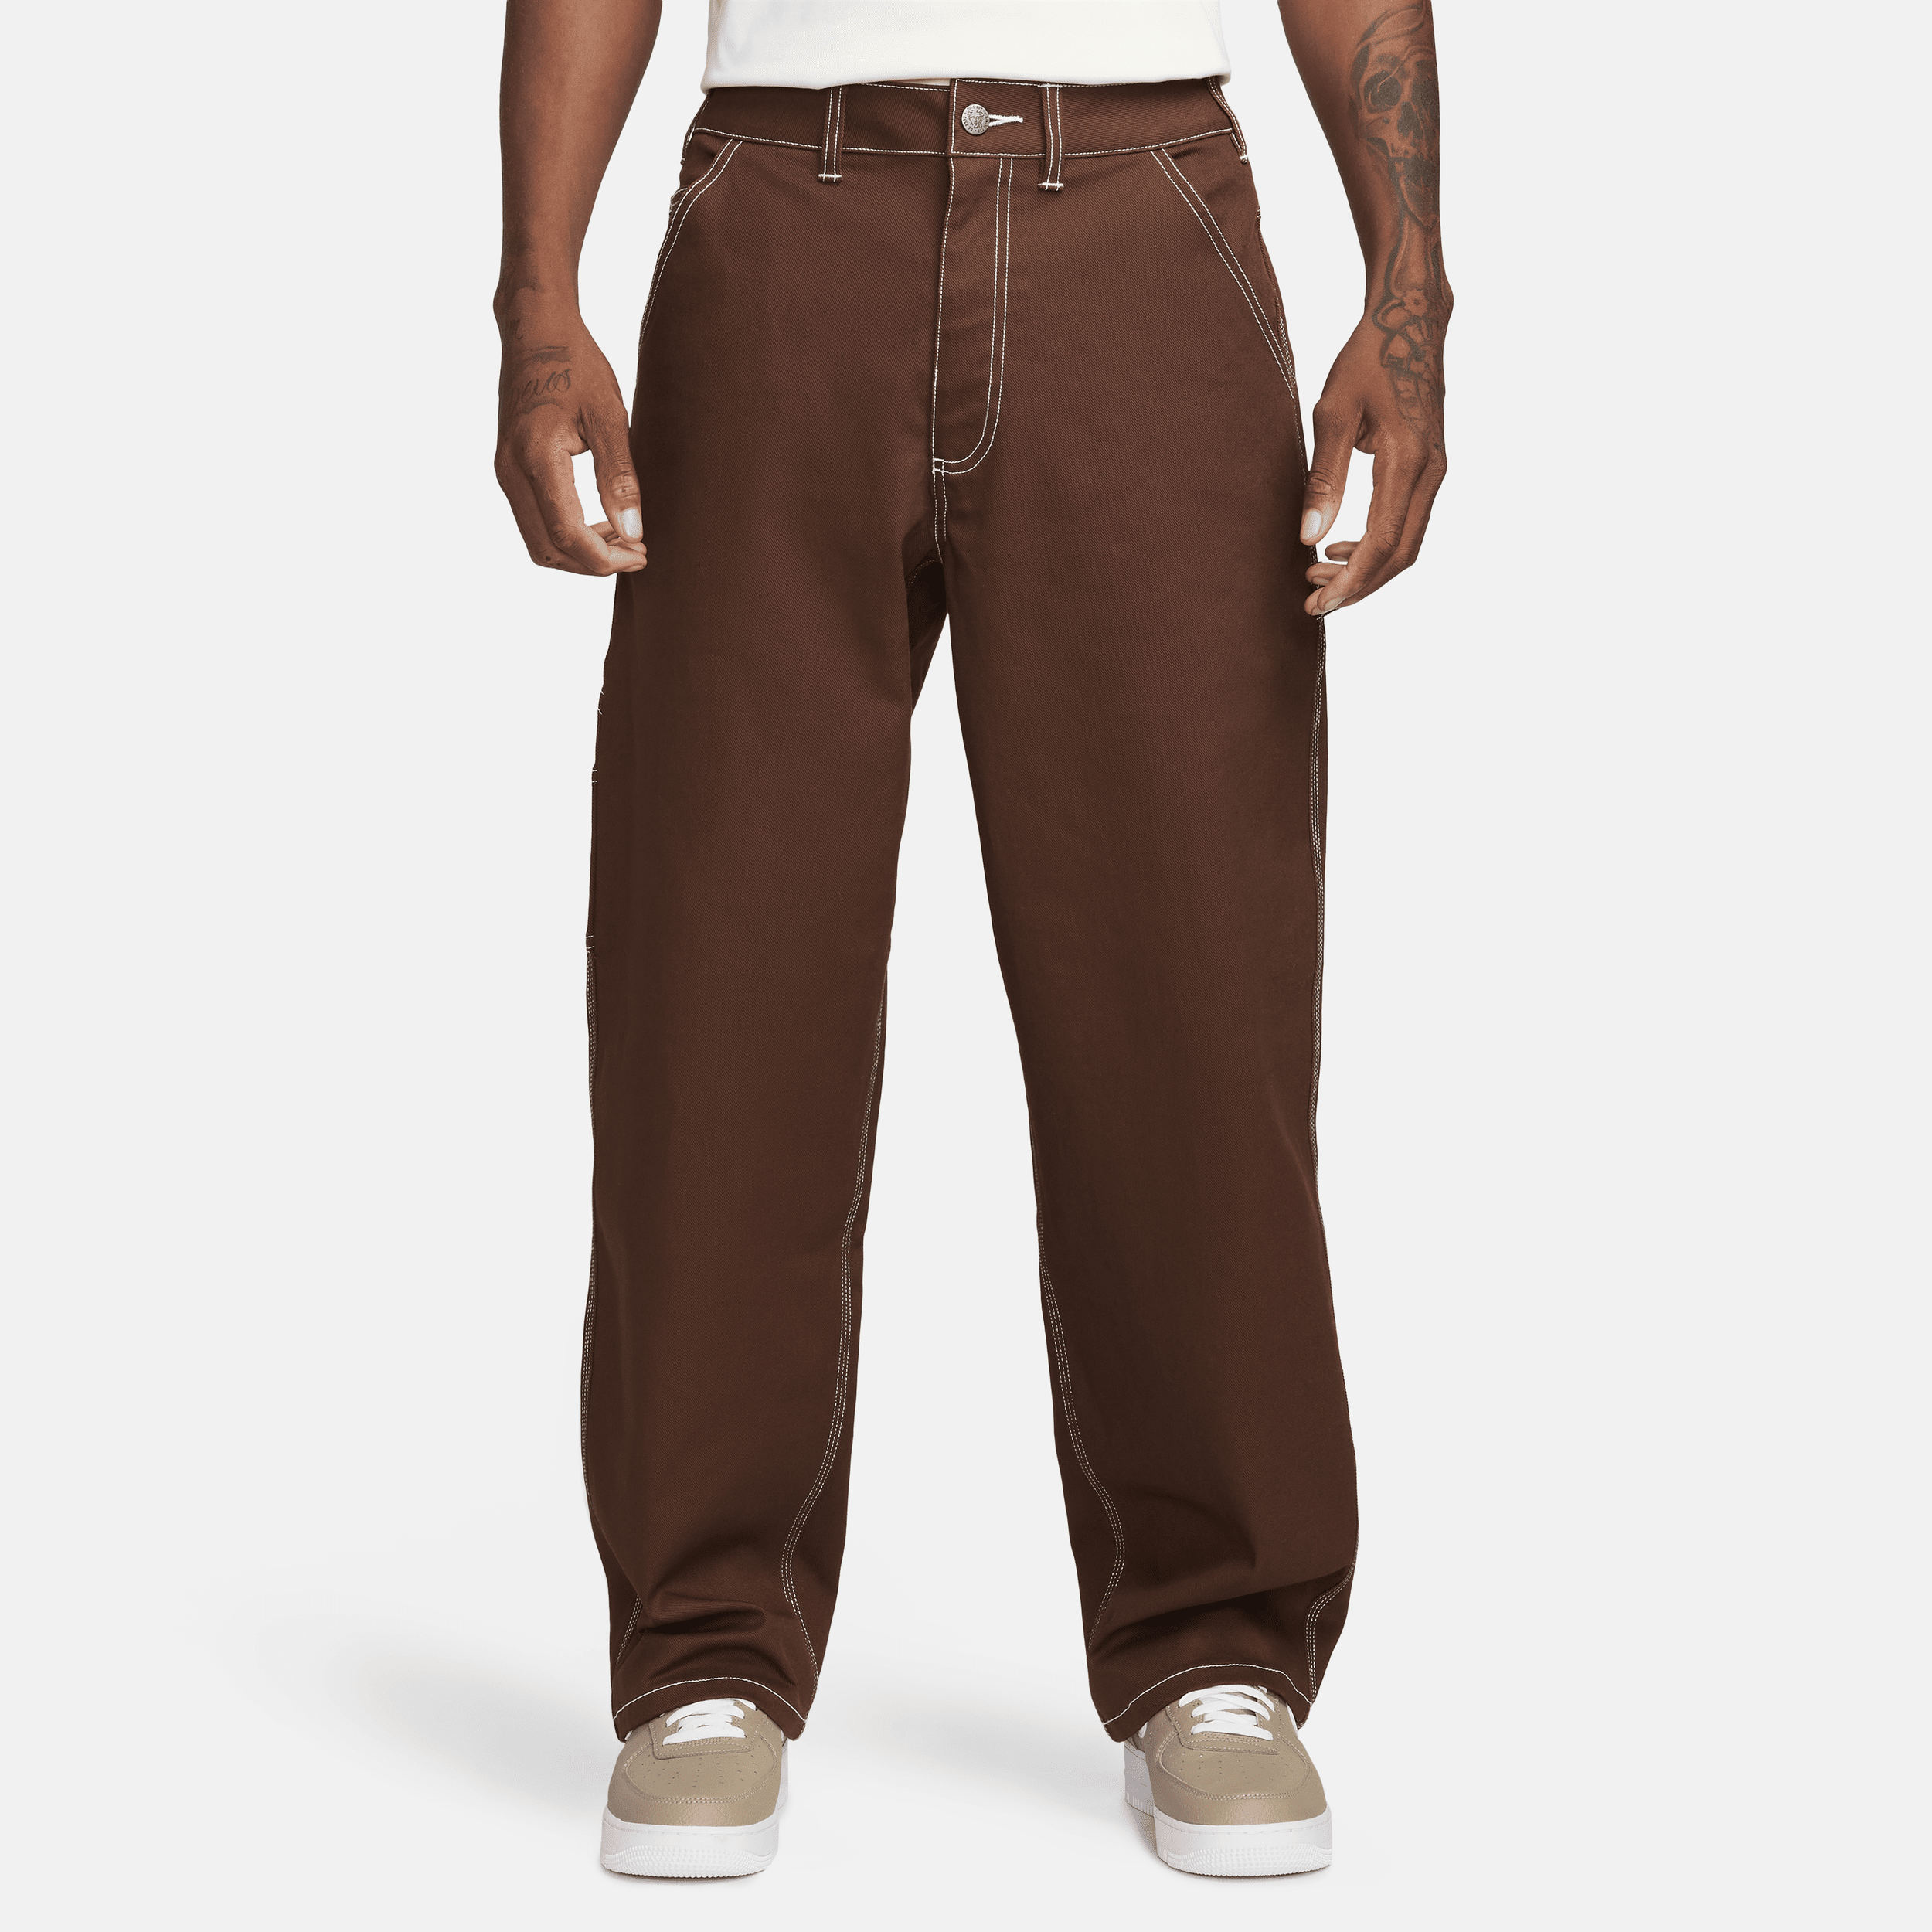 Nike Life Pantalón de carpintero - Hombre - Marrón